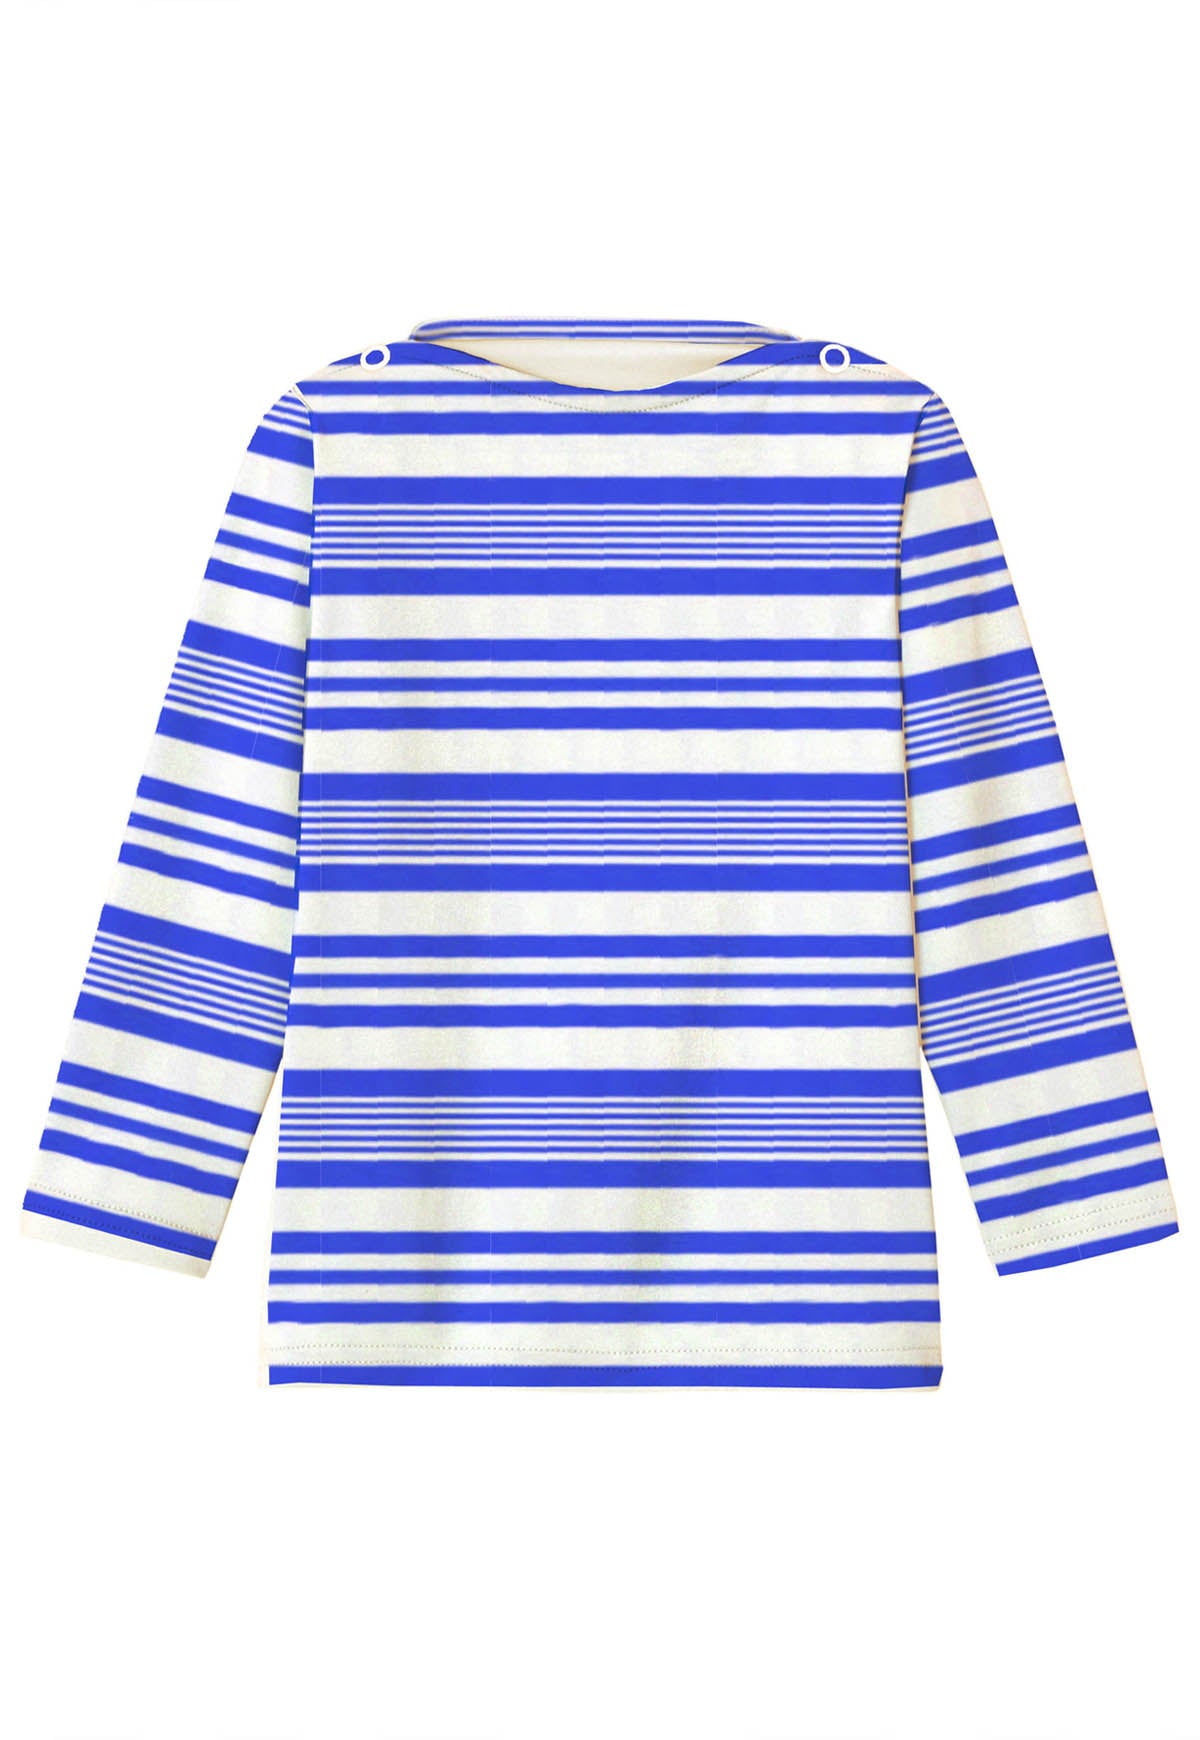 Tee-shirt garçon anti UV, rayé bleu | T-SHIRT MALO